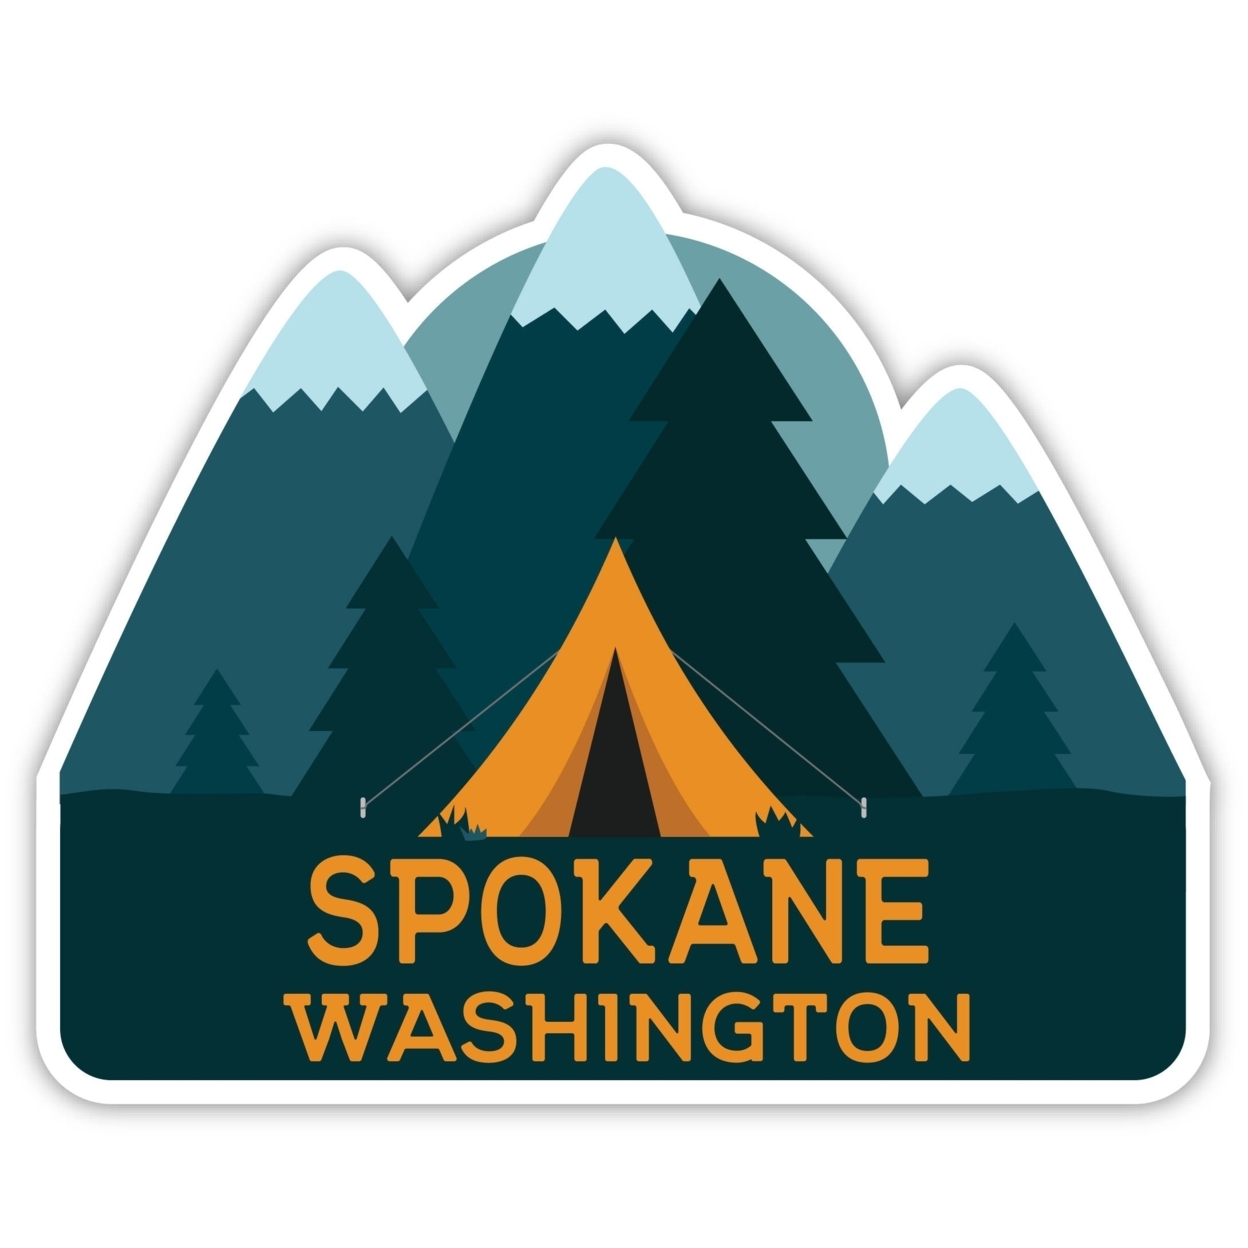 Spokane Washington Souvenir Decorative Stickers (Choose Theme And Size) - Single Unit, 2-Inch, Bear